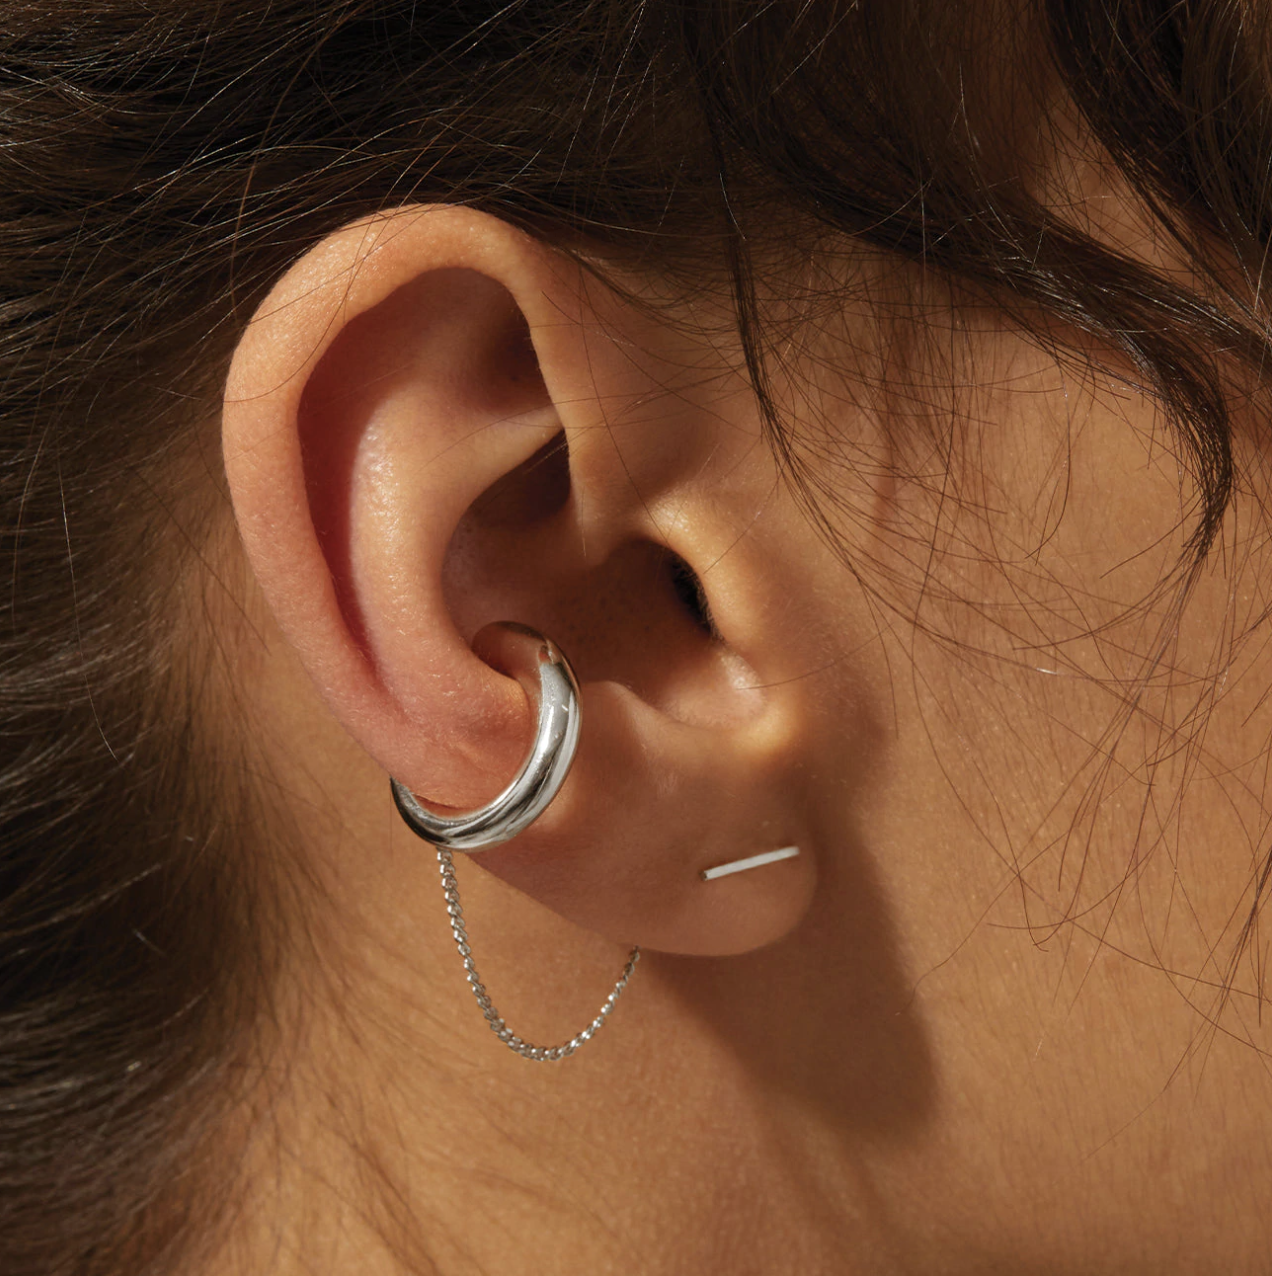 a close up of the ear cuff on a person&#x27;s ear